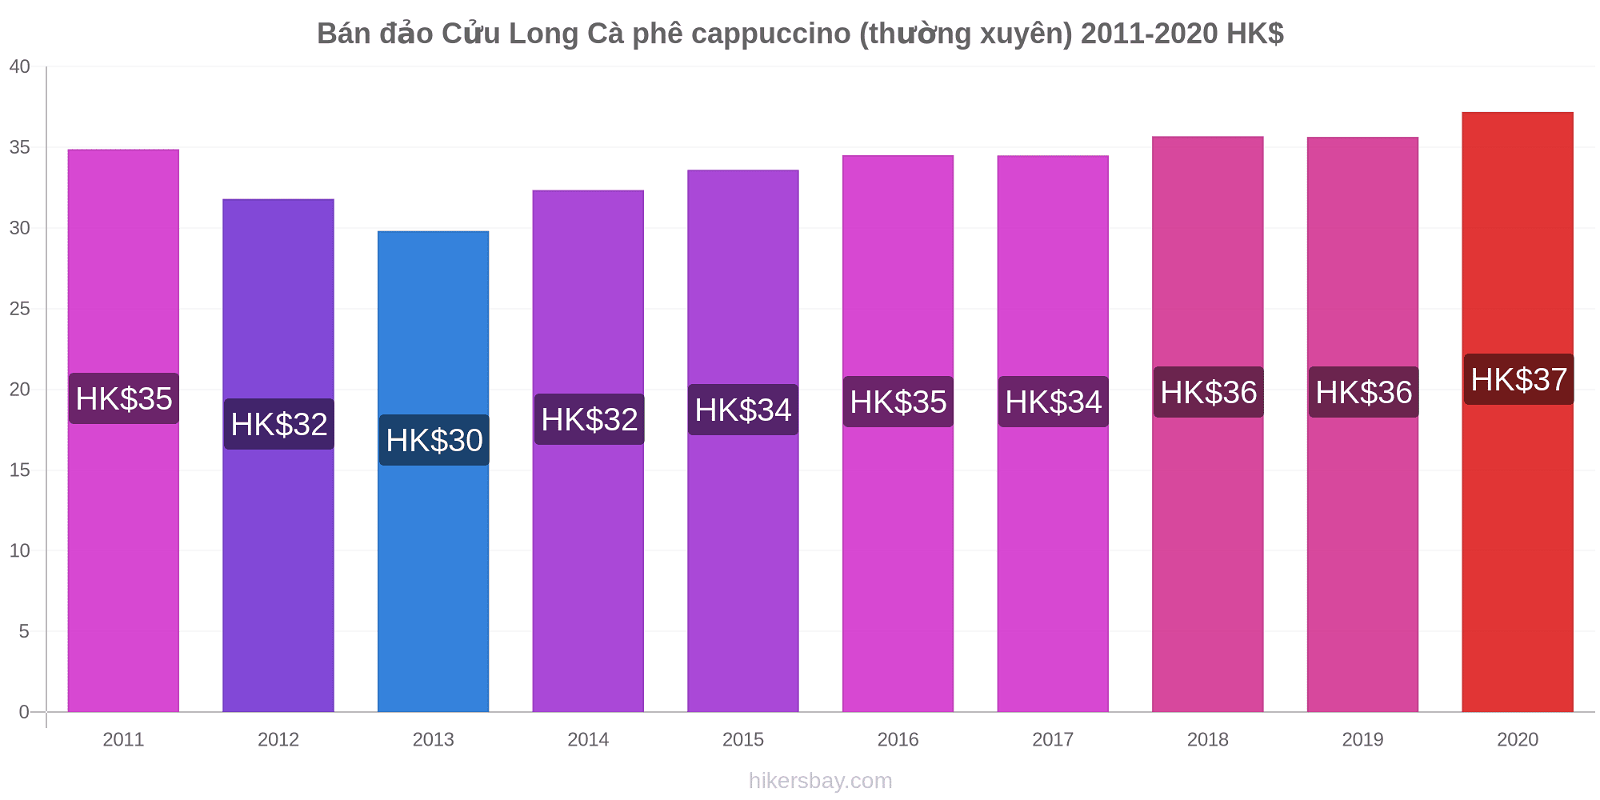 Bán đảo Cửu Long thay đổi giá Cà phê cappuccino (thường xuyên) hikersbay.com